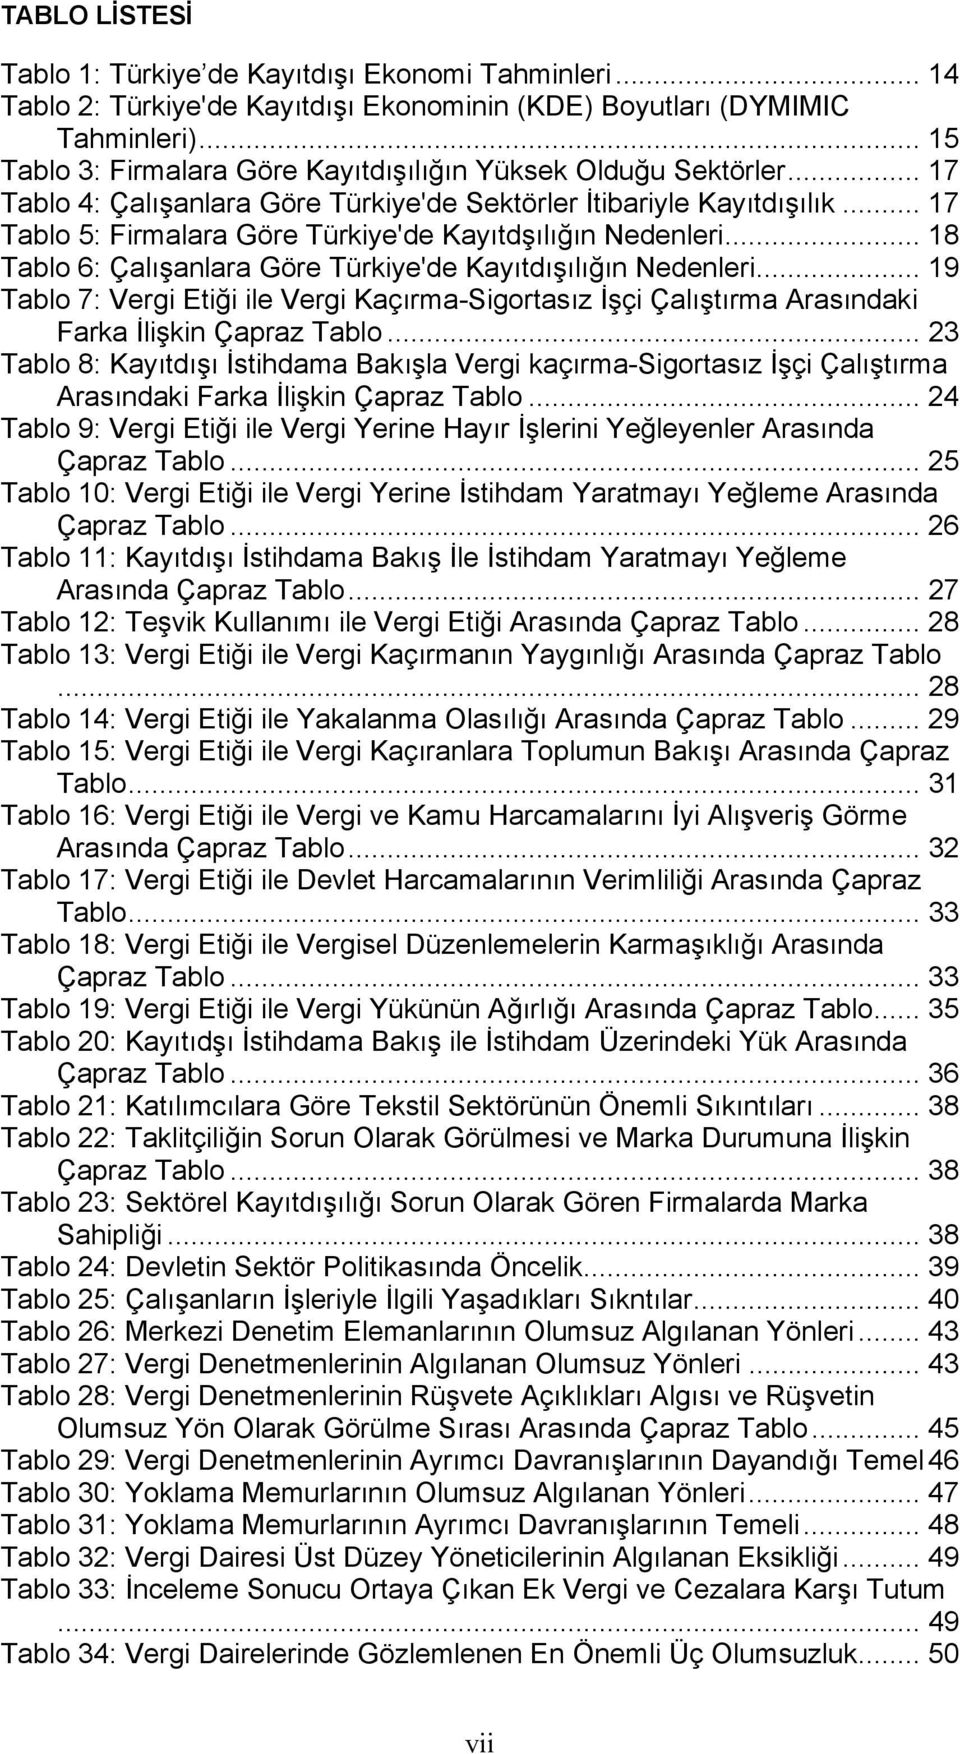 .. 17 Tablo 5: Firmalara Göre Türkiye'de Kayıtdşılığın Nedenleri... 18 Tablo 6: Çalışanlara Göre Türkiye'de Kayıtdışılığın Nedenleri.